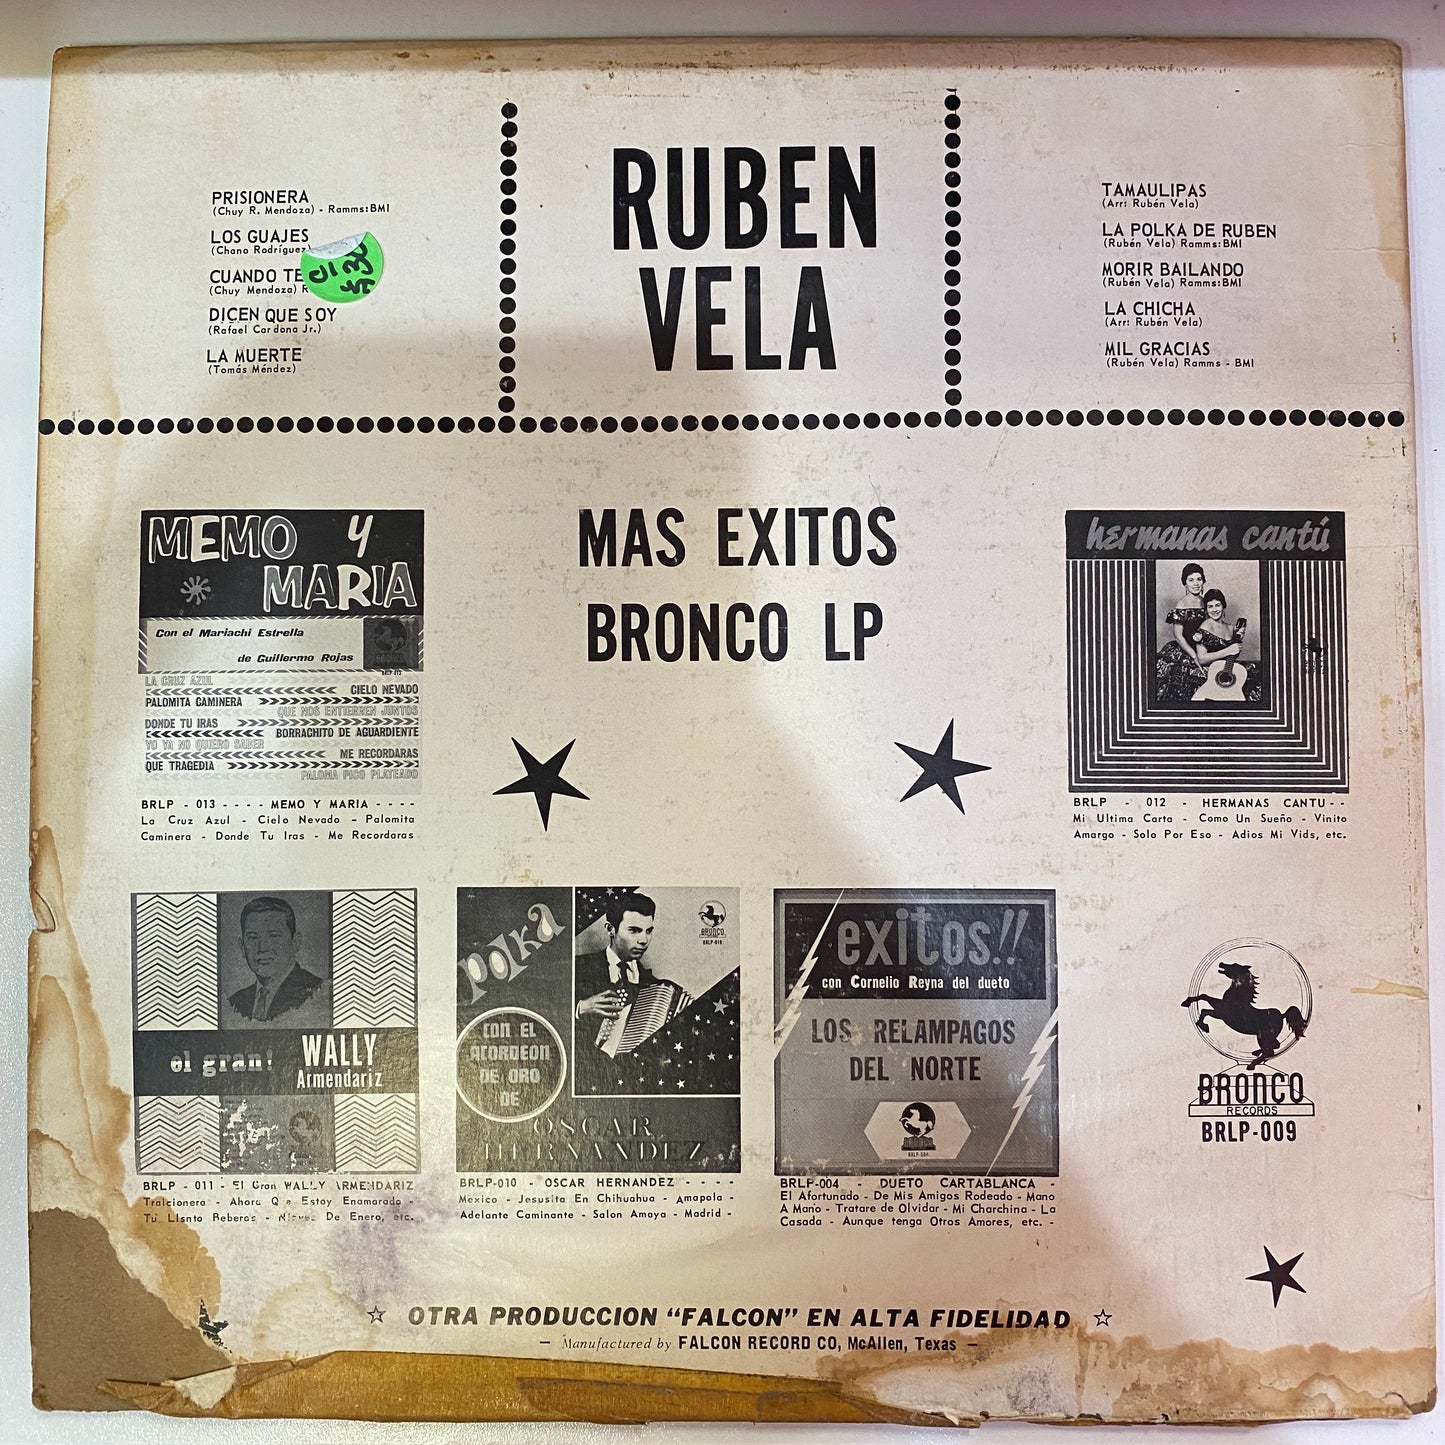 Ruben Vela - Mas Exitos (Vinyl Cover)